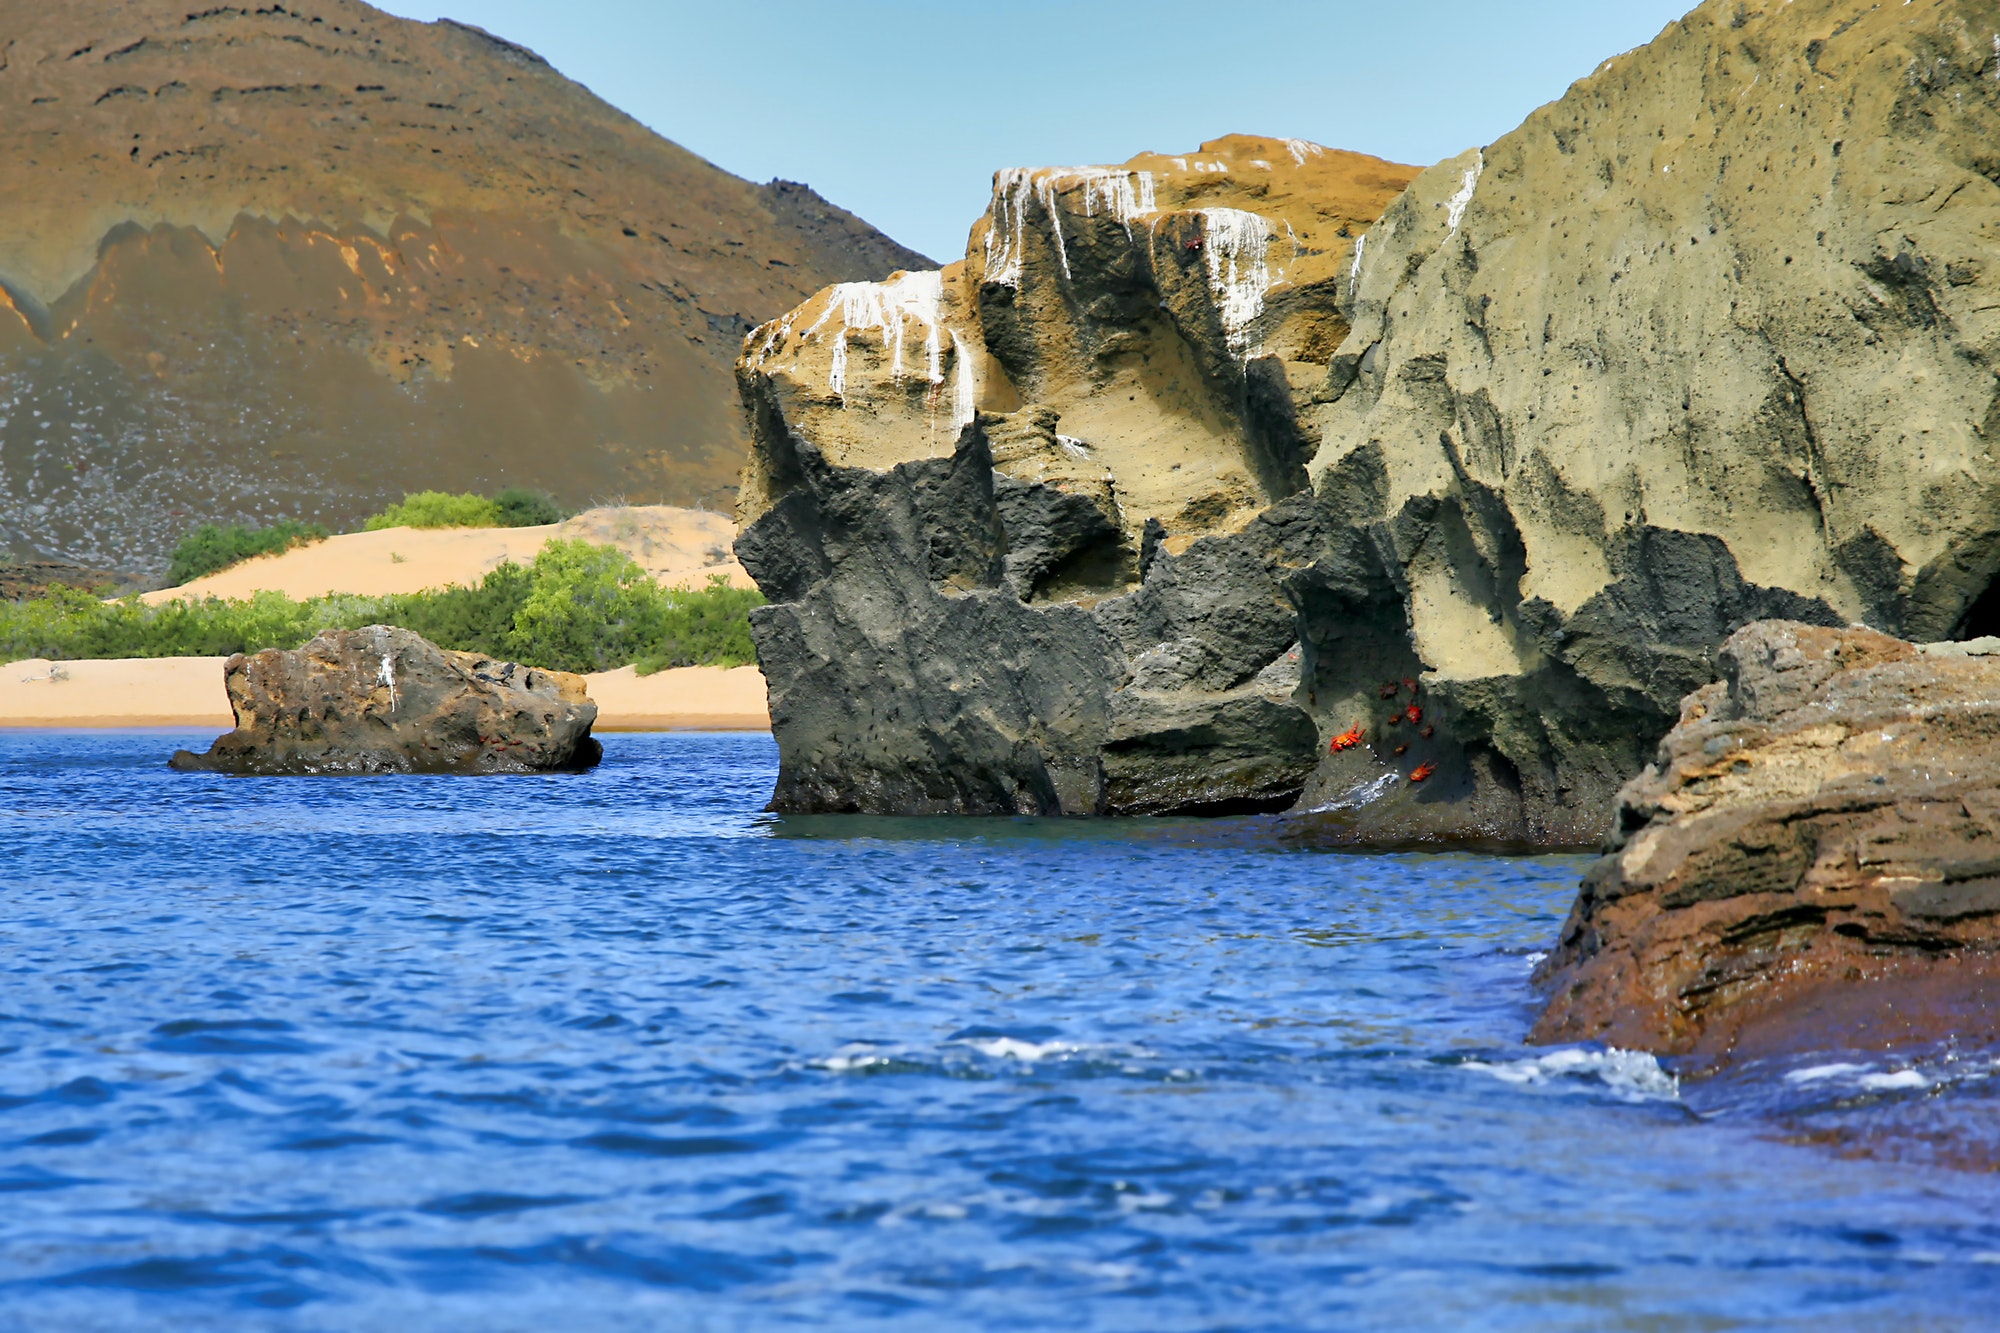 Galapagos Islands Seascape, Galapagos National Park, Ecuador